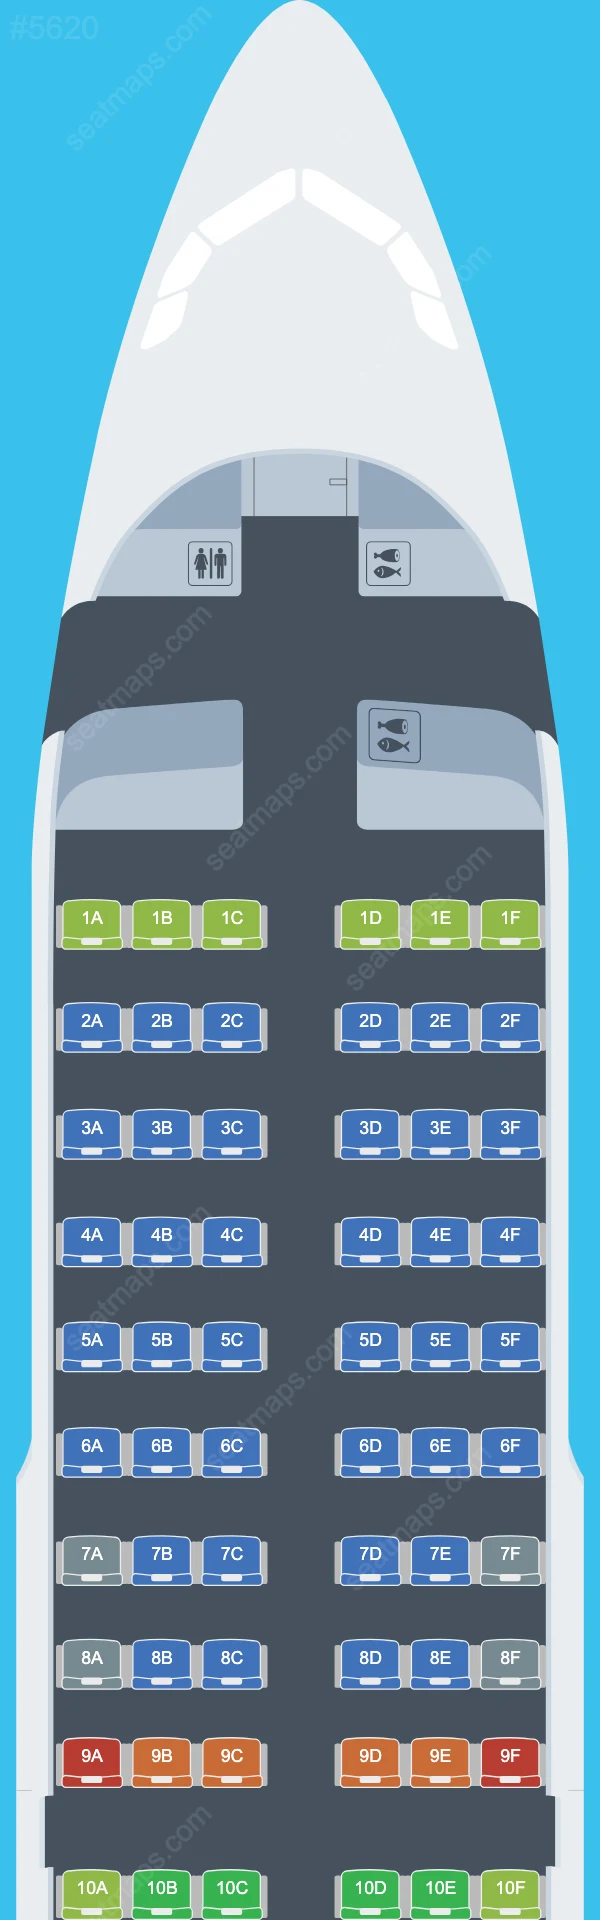 Air France Airbus A319 Seat Maps A319-100 V.1